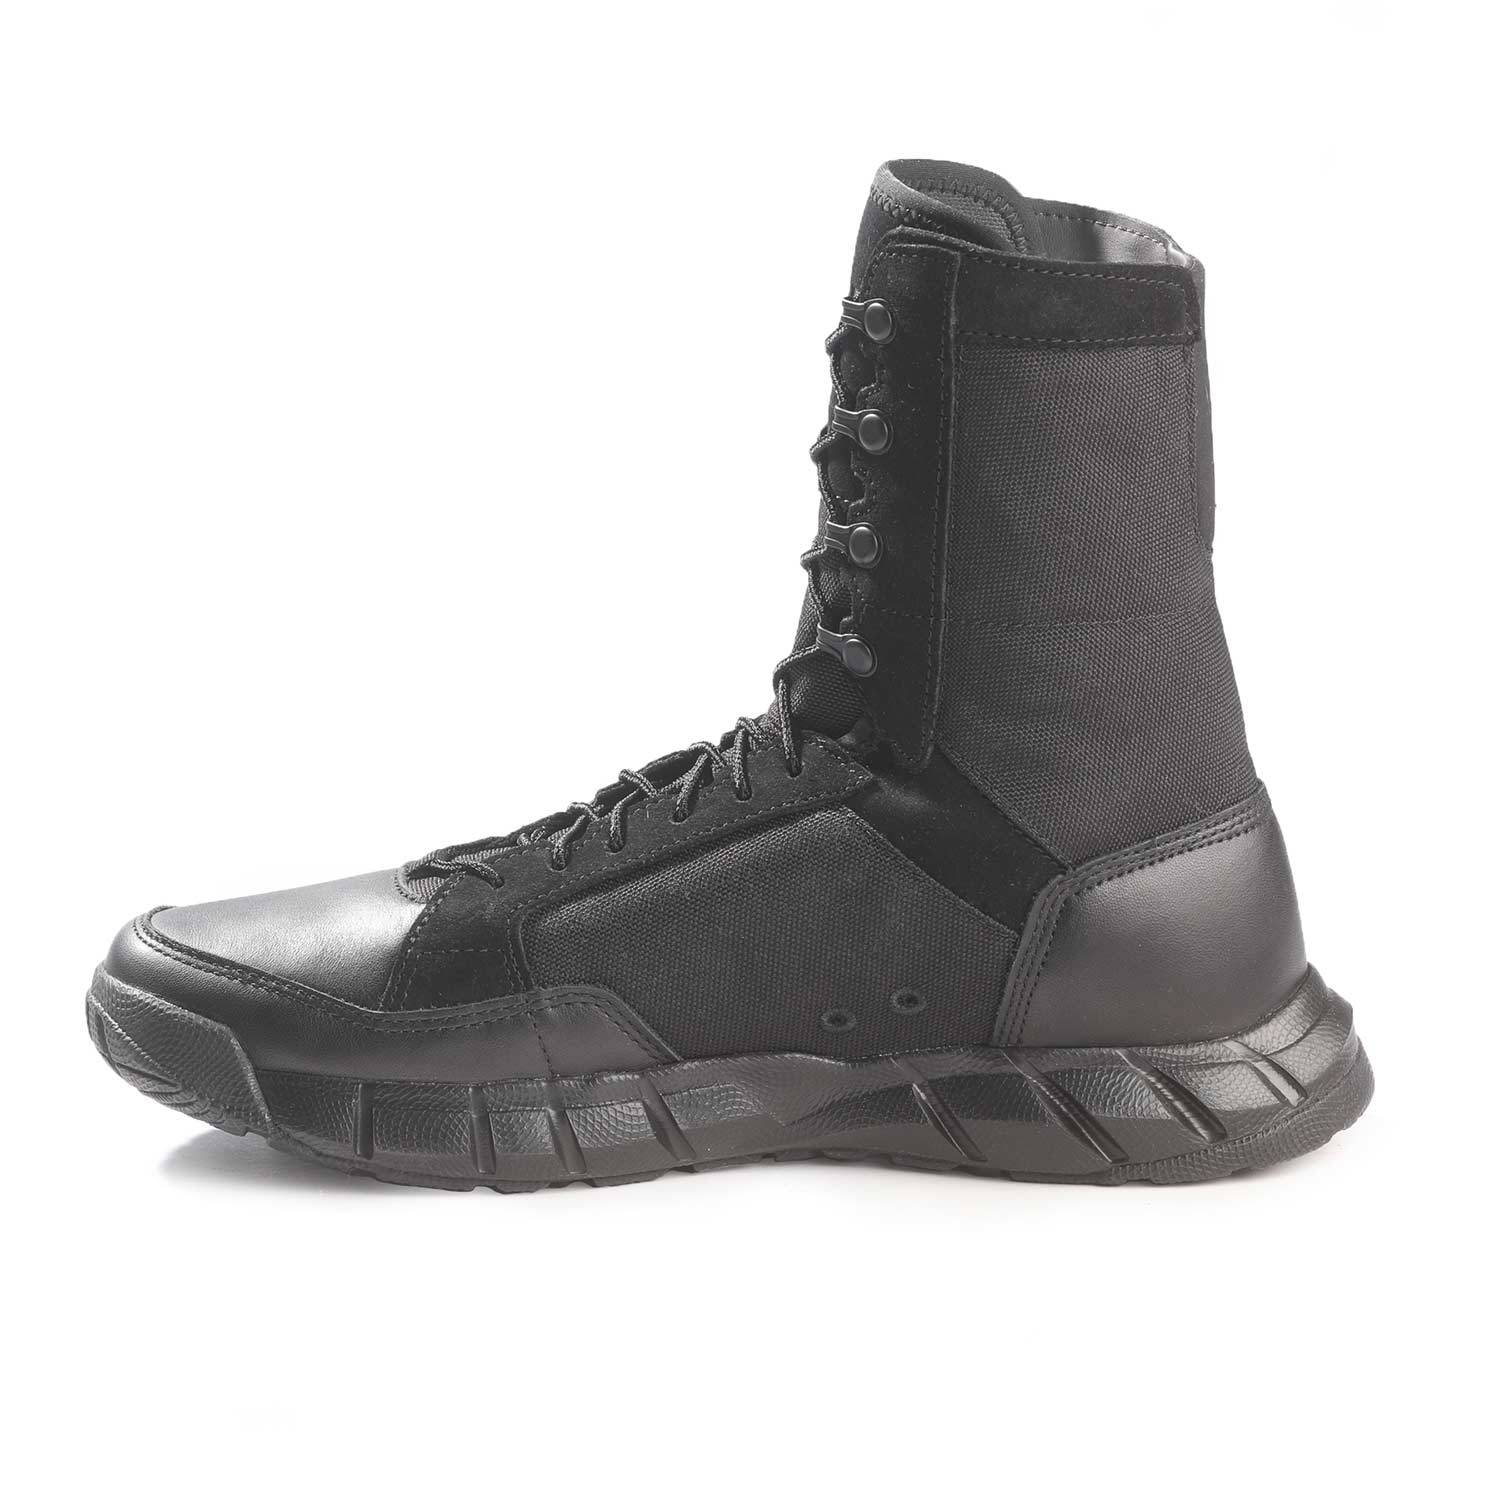 oakley si assault boots